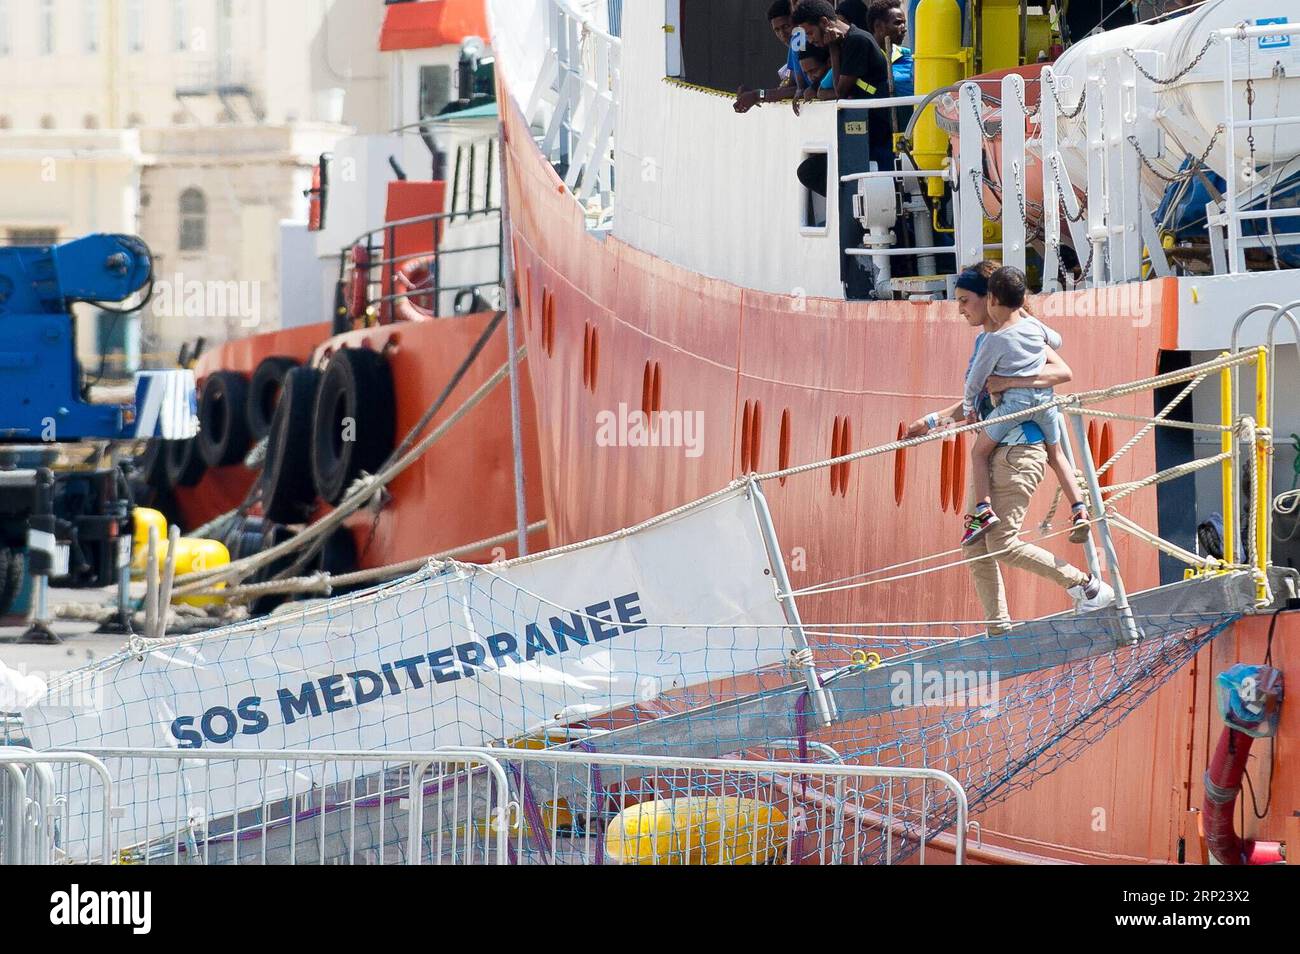 (180815) -- LA VALETTE, le 15 août 2018 -- Une femme tenant un enfant débarque du navire humanitaire le MV Aquarius à Boiler Wharf à Senglea, Malte, le 15 août 2018. Le navire humanitaire The MV Aquarius a accosté à Malte mercredi après-midi avec 141 migrants secourus à son bord. MALTA-SENGLEA-HUMANITARIAN VESSEL-MIGRANTS-DOCKING ROBERTOXRUNZA PUBLICATIONXNOTXINXCHN Banque D'Images